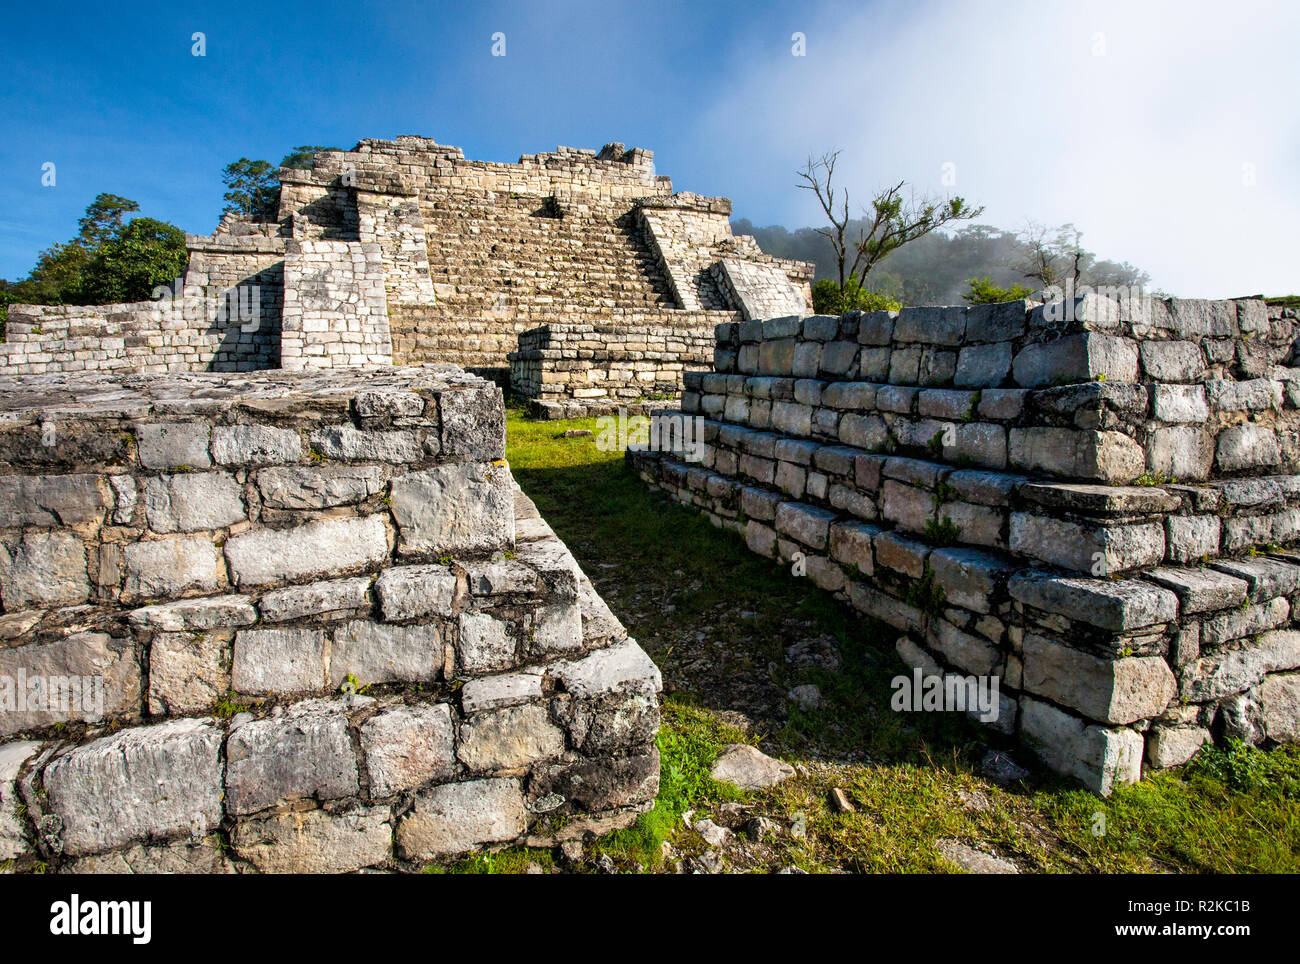 The main pyramid at the Mayan ruins of Chinkultic, Chiapas, Mexico. Stock Photo